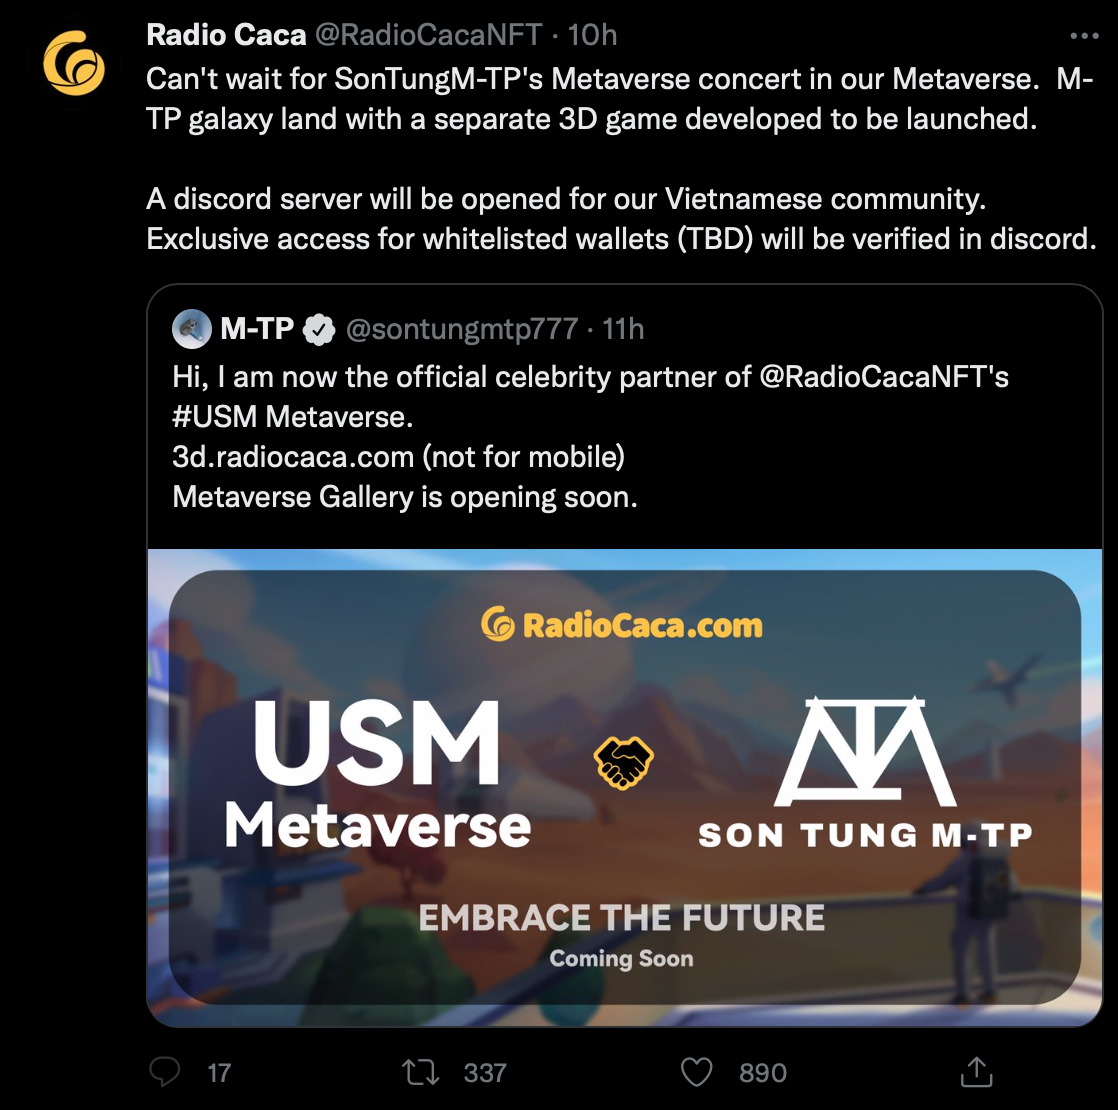 Trang chủ của Radio Caca trên Twitter cũng cho biết thêm về các quyền lợi mà fan Sơn Tùng M-TP có được trên USM Metaverse